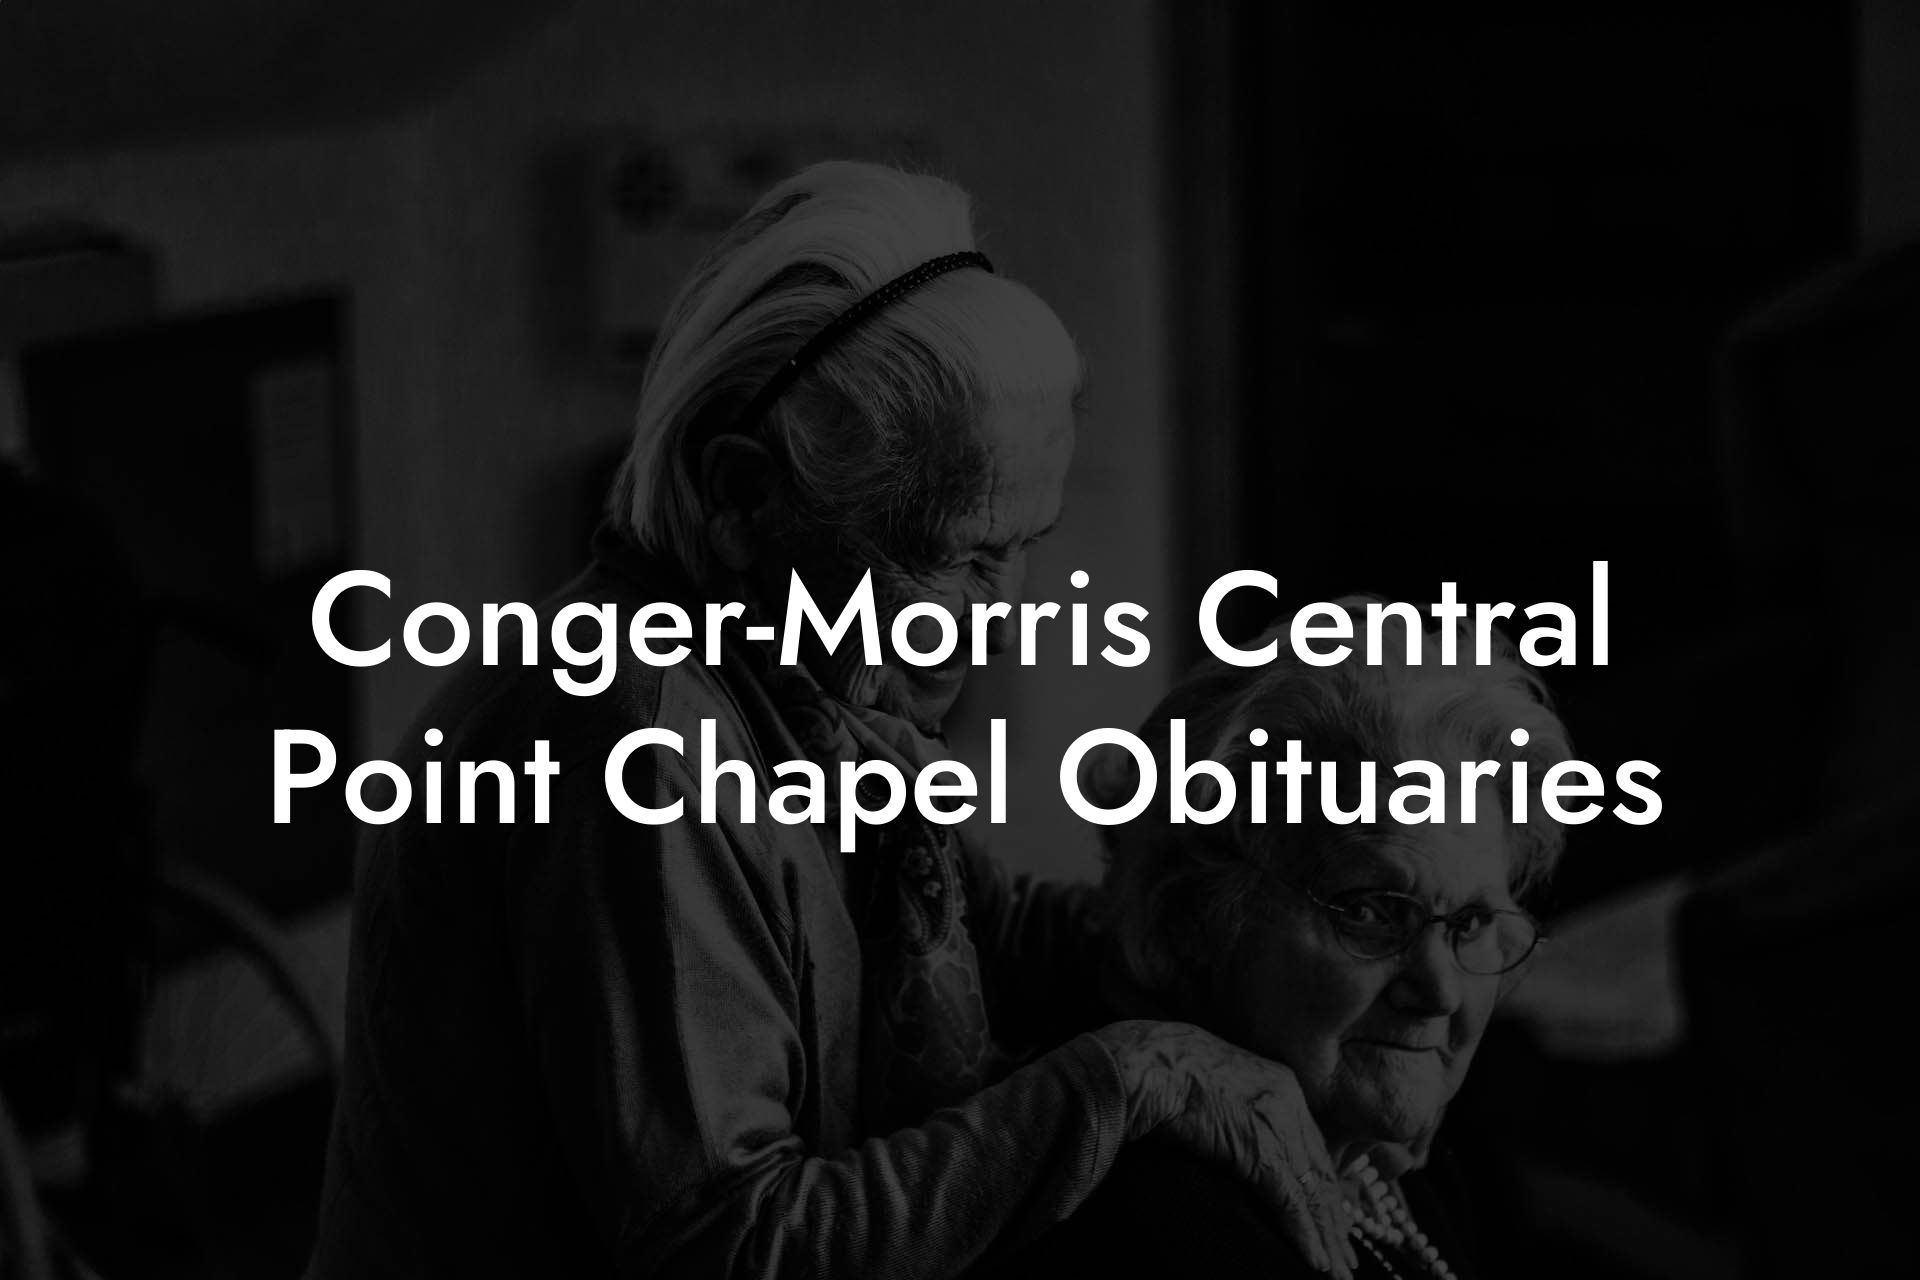 Conger-Morris Central Point Chapel Obituaries